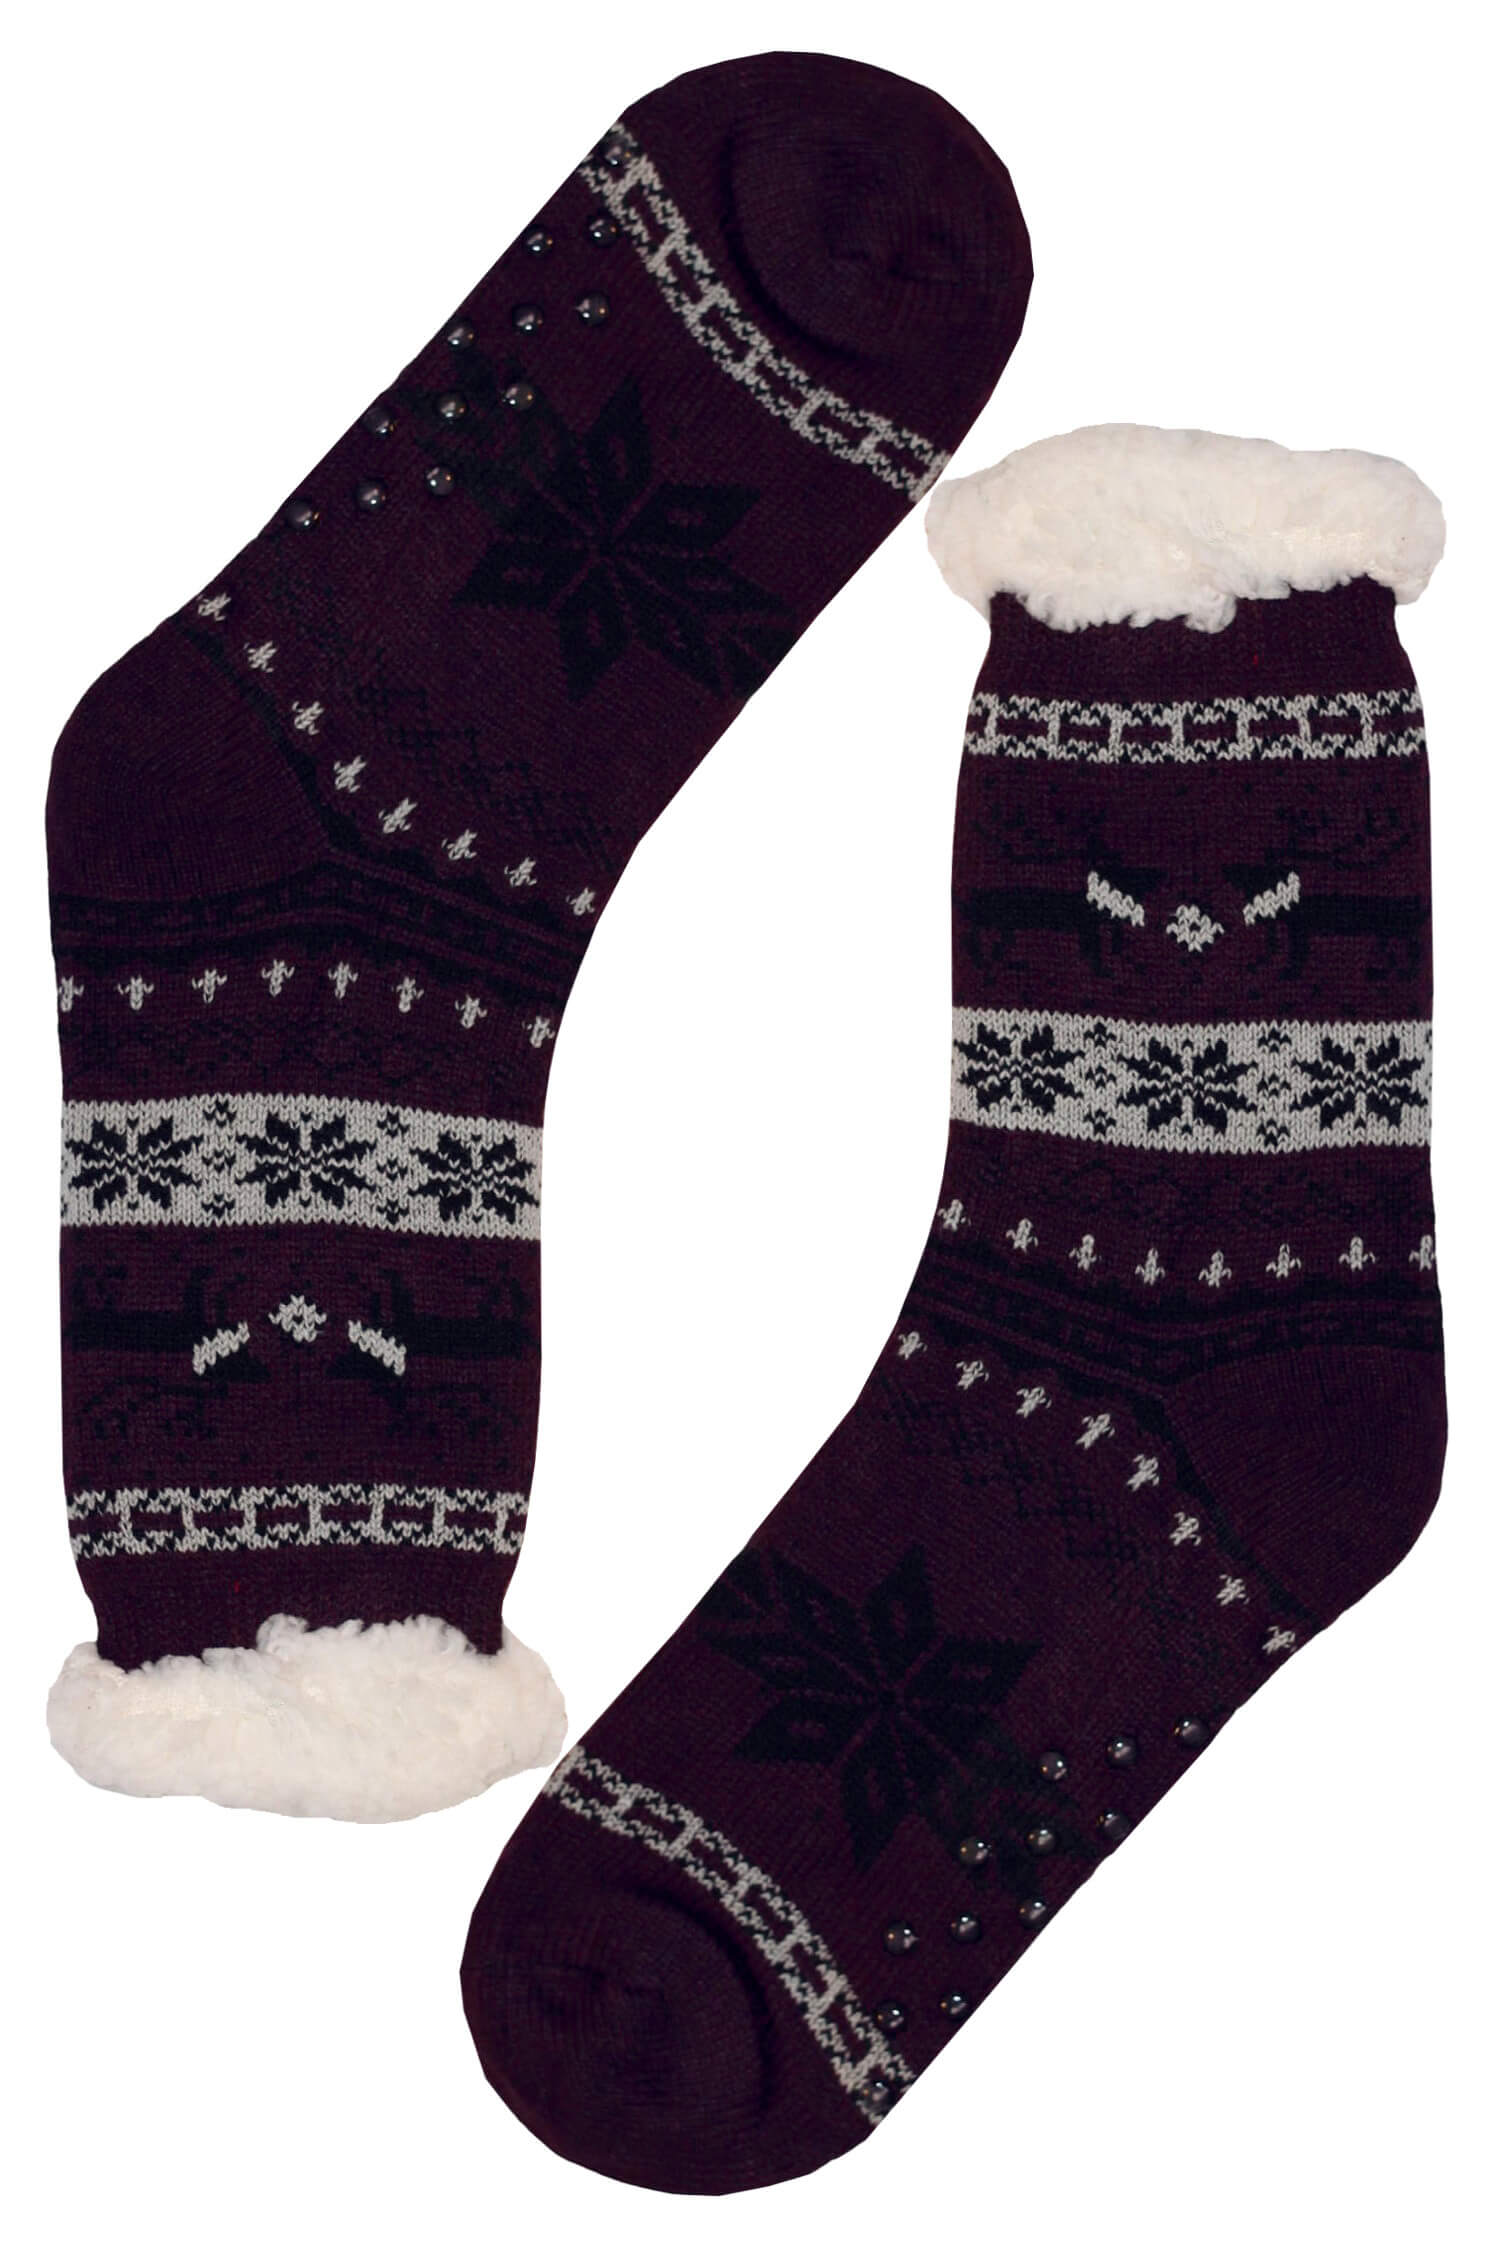 Polaros purple teplé ponožky s beránkem MC 112 39-42 tmavě fialová